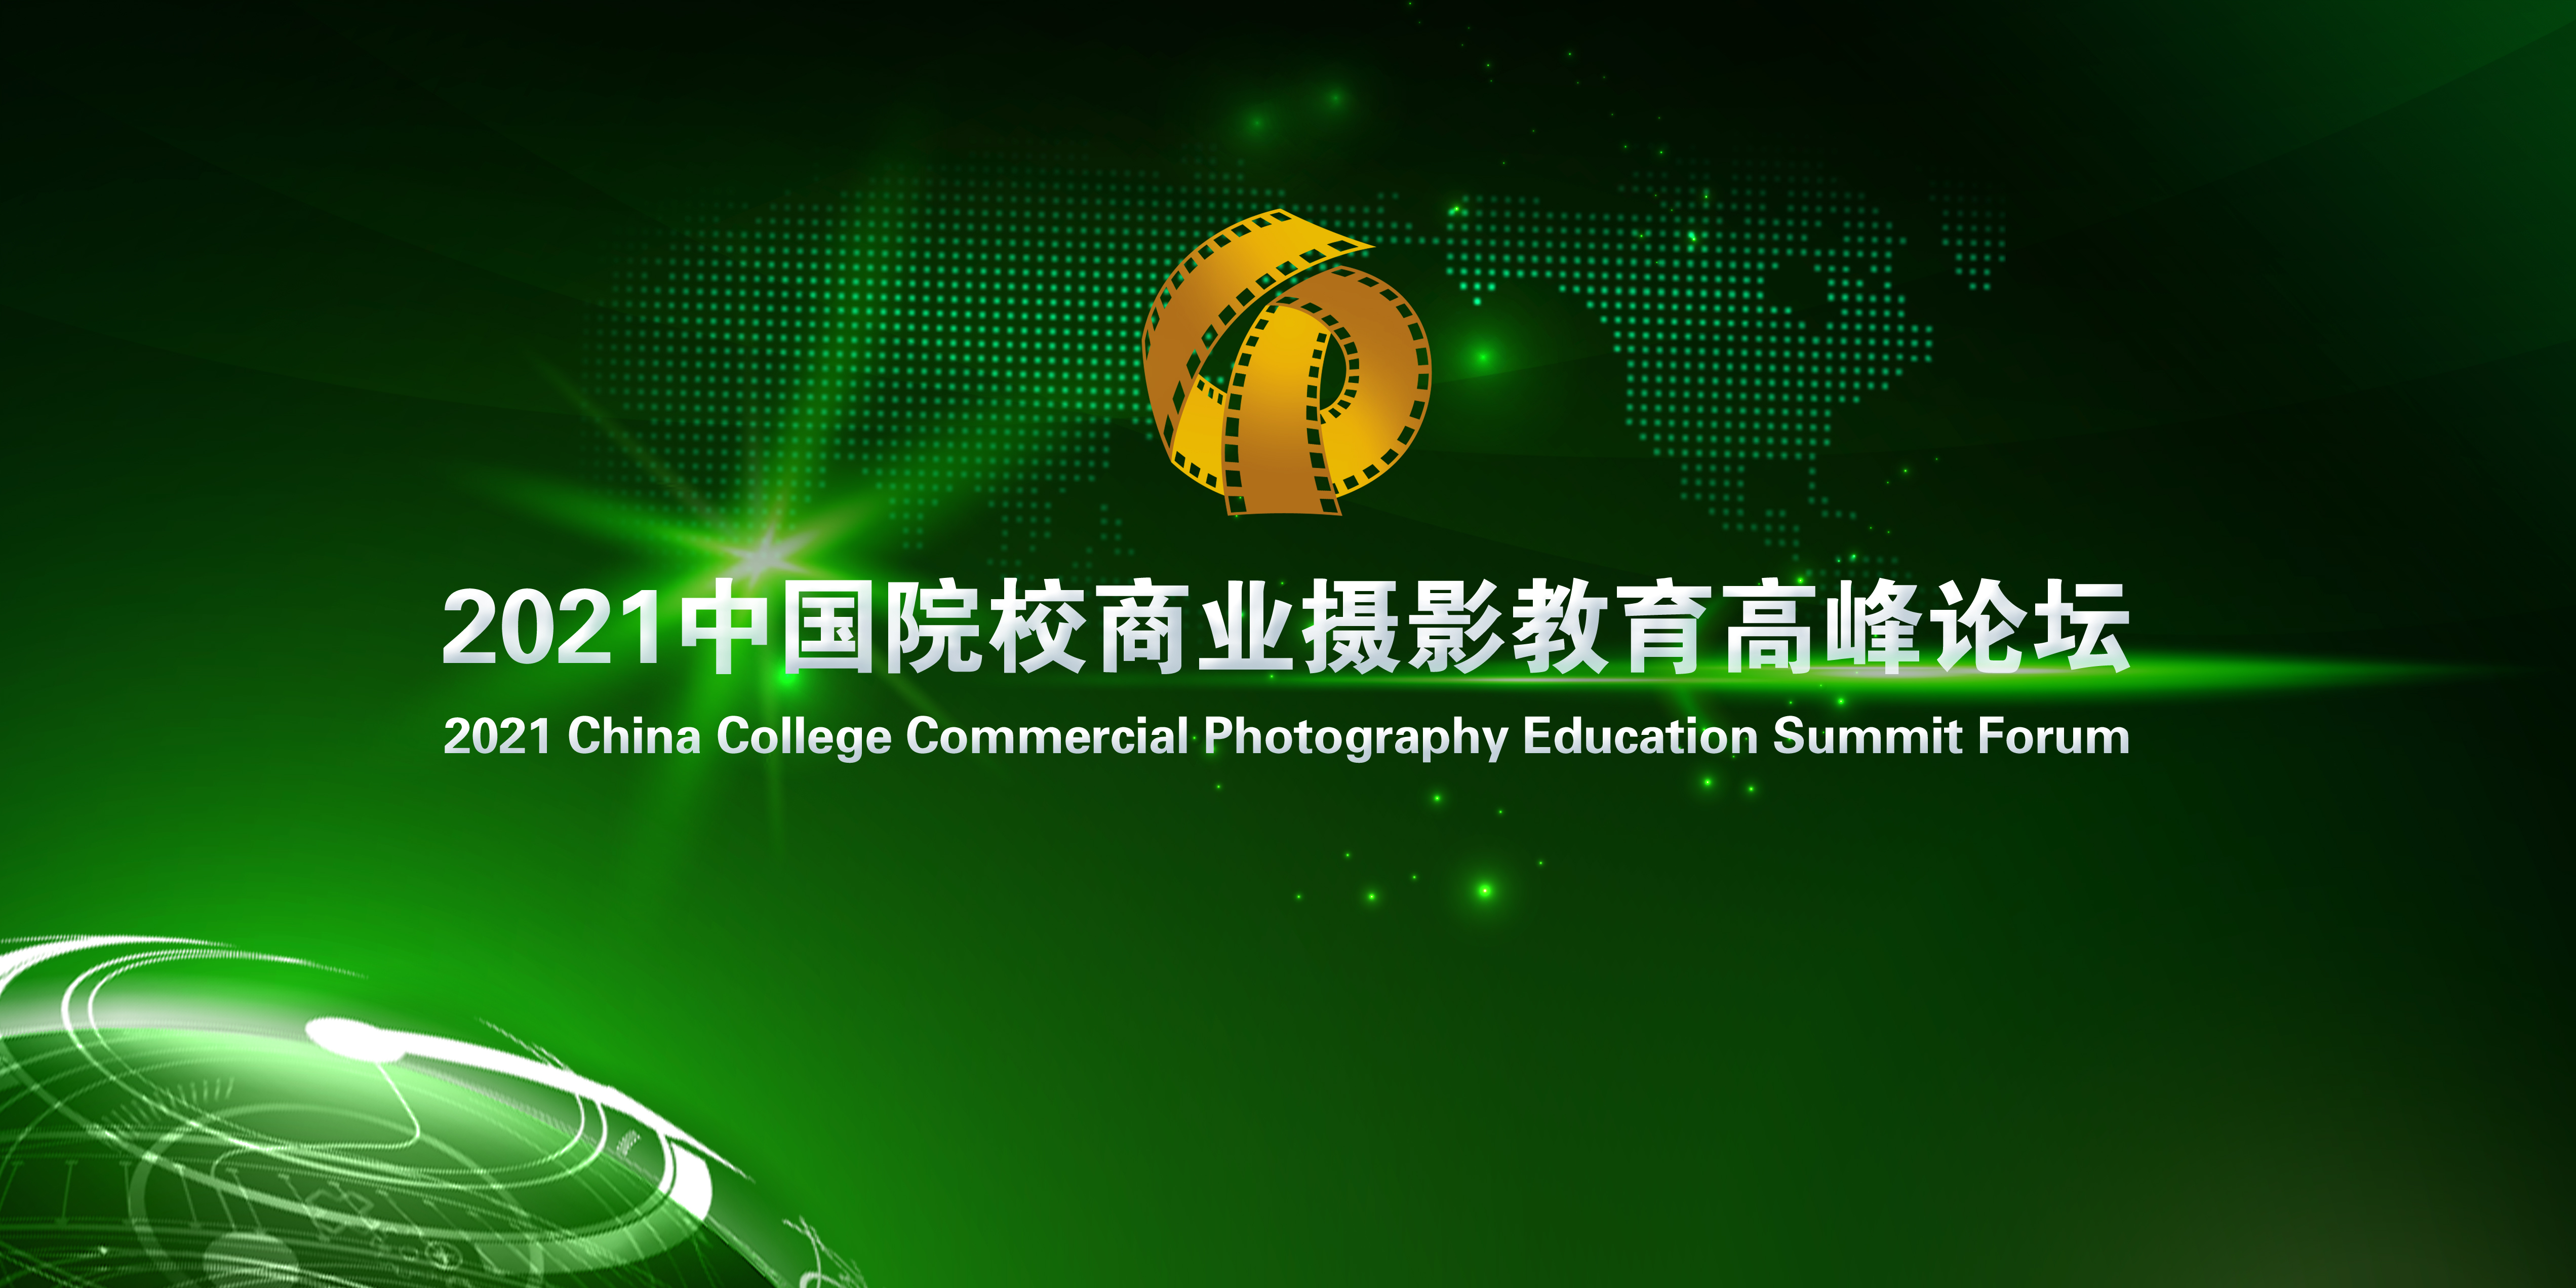 2021中国院校商业摄影教育高峰论坛在许昌胜利闭幕！